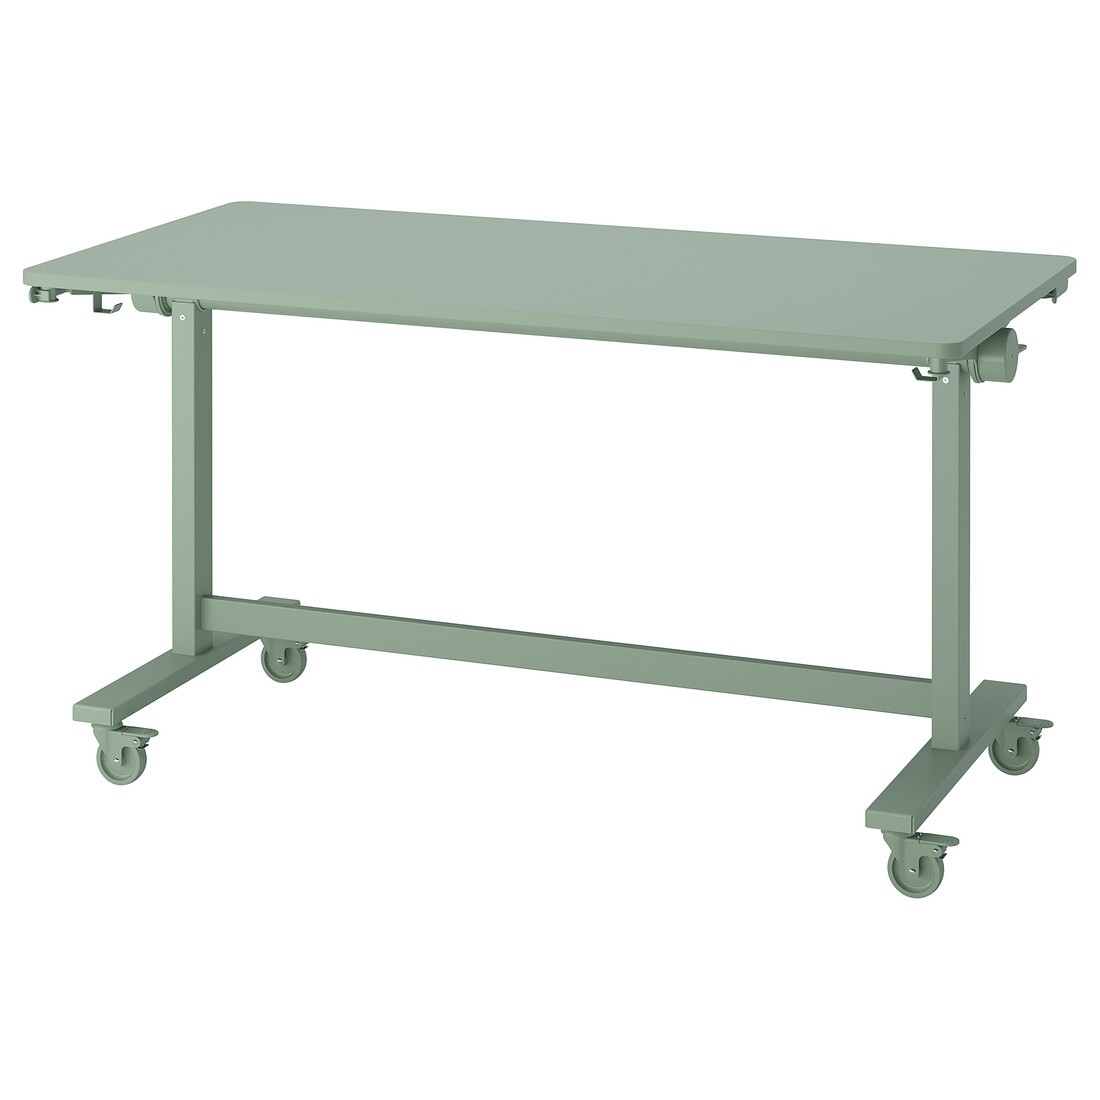 MITTZON складаний стіл на коліщатах, зелений, 140x70 см